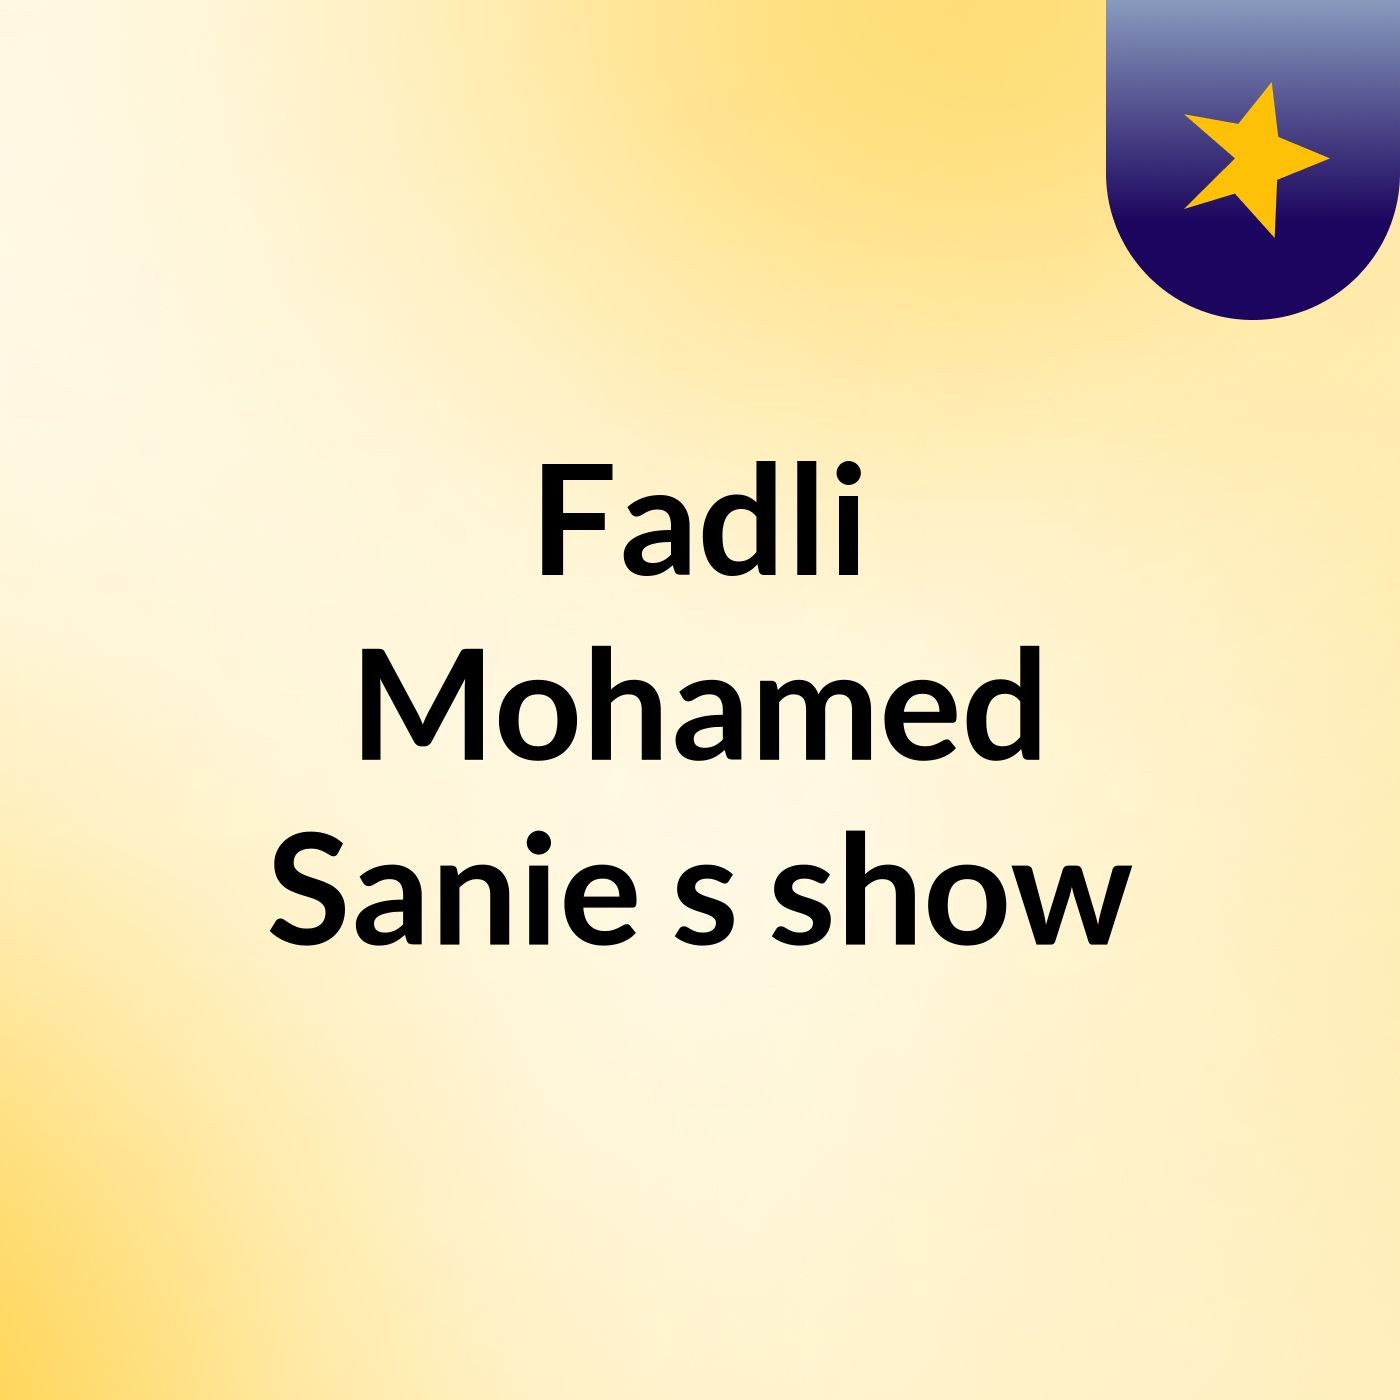 Episode 3 - Fadli Mohamed Sanie's show